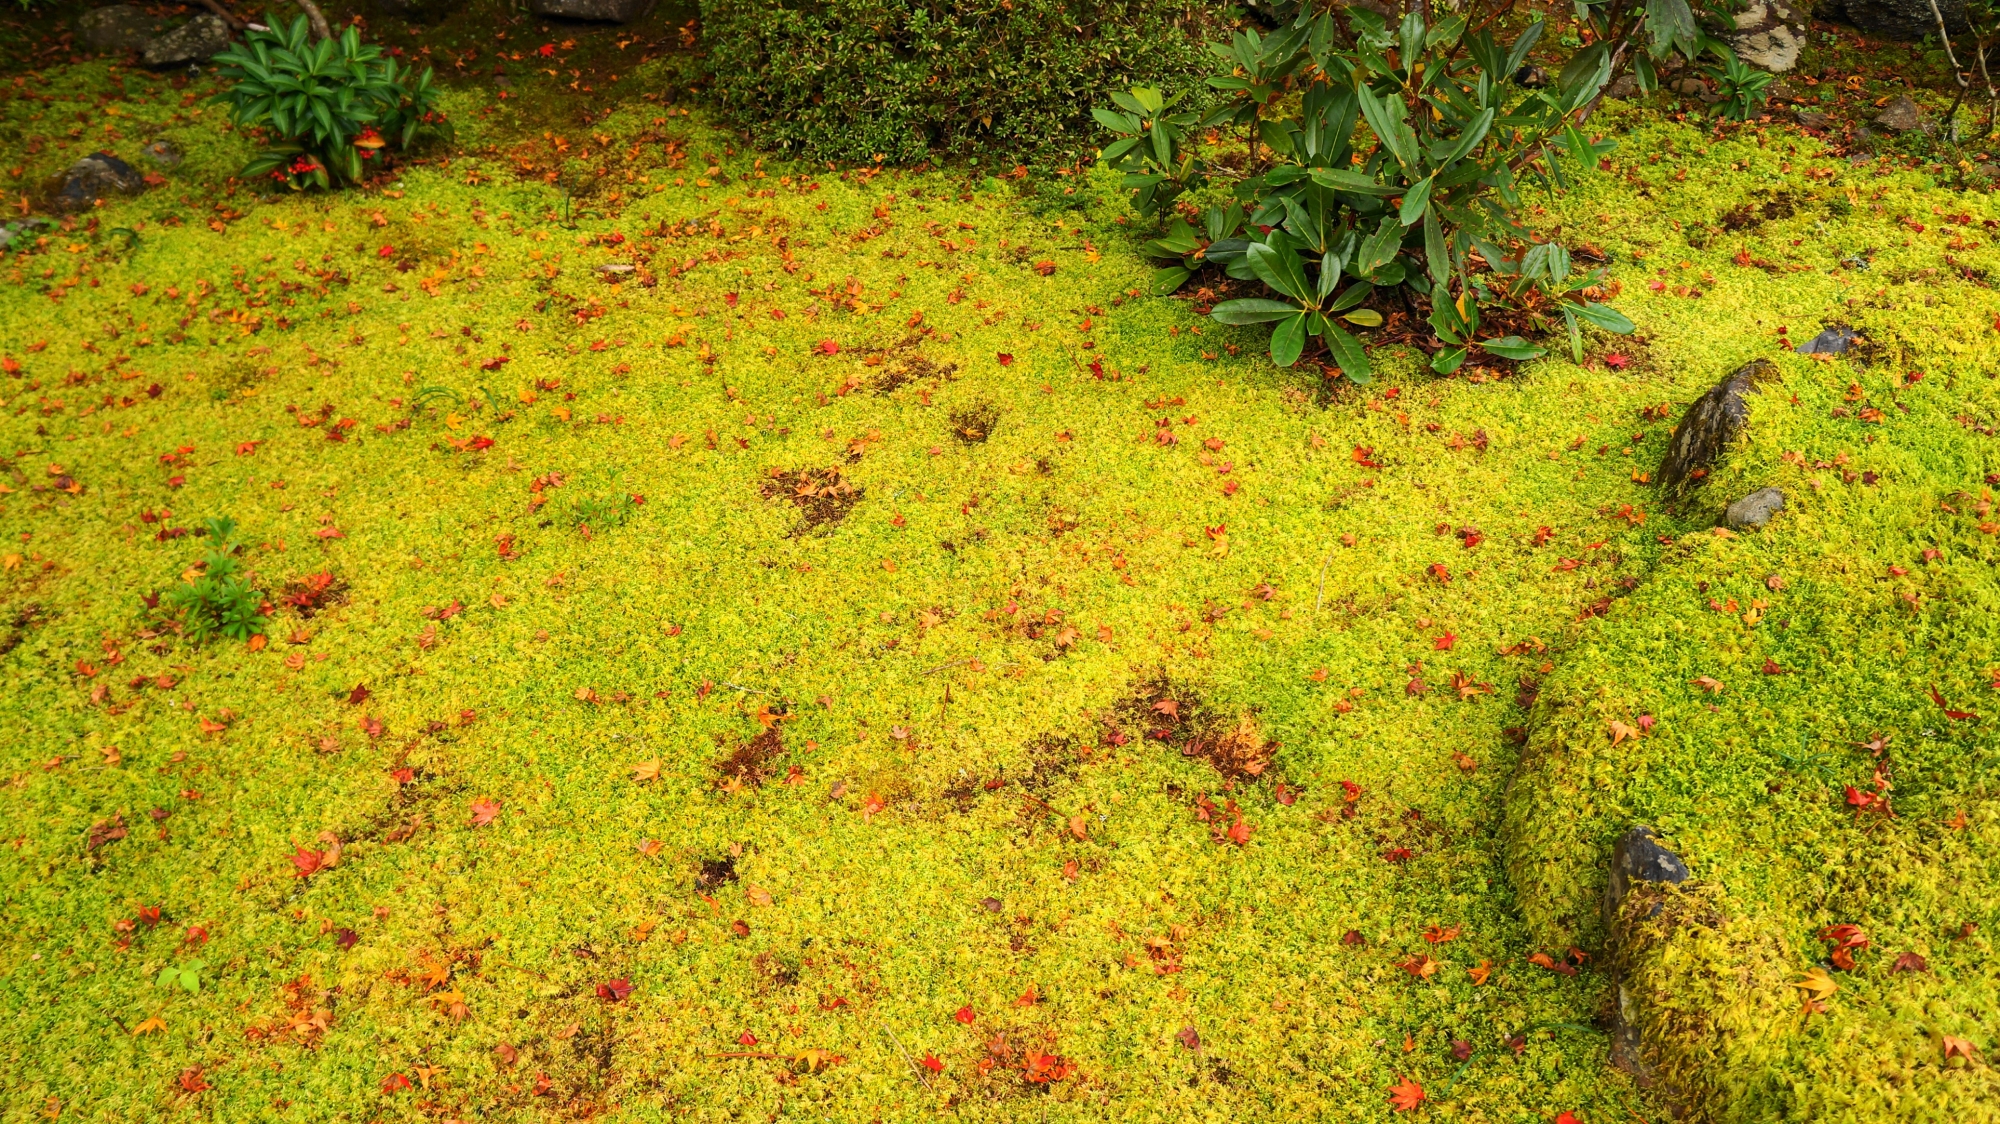 西明寺の緑の苔を華やぐ上品な散りもみじ